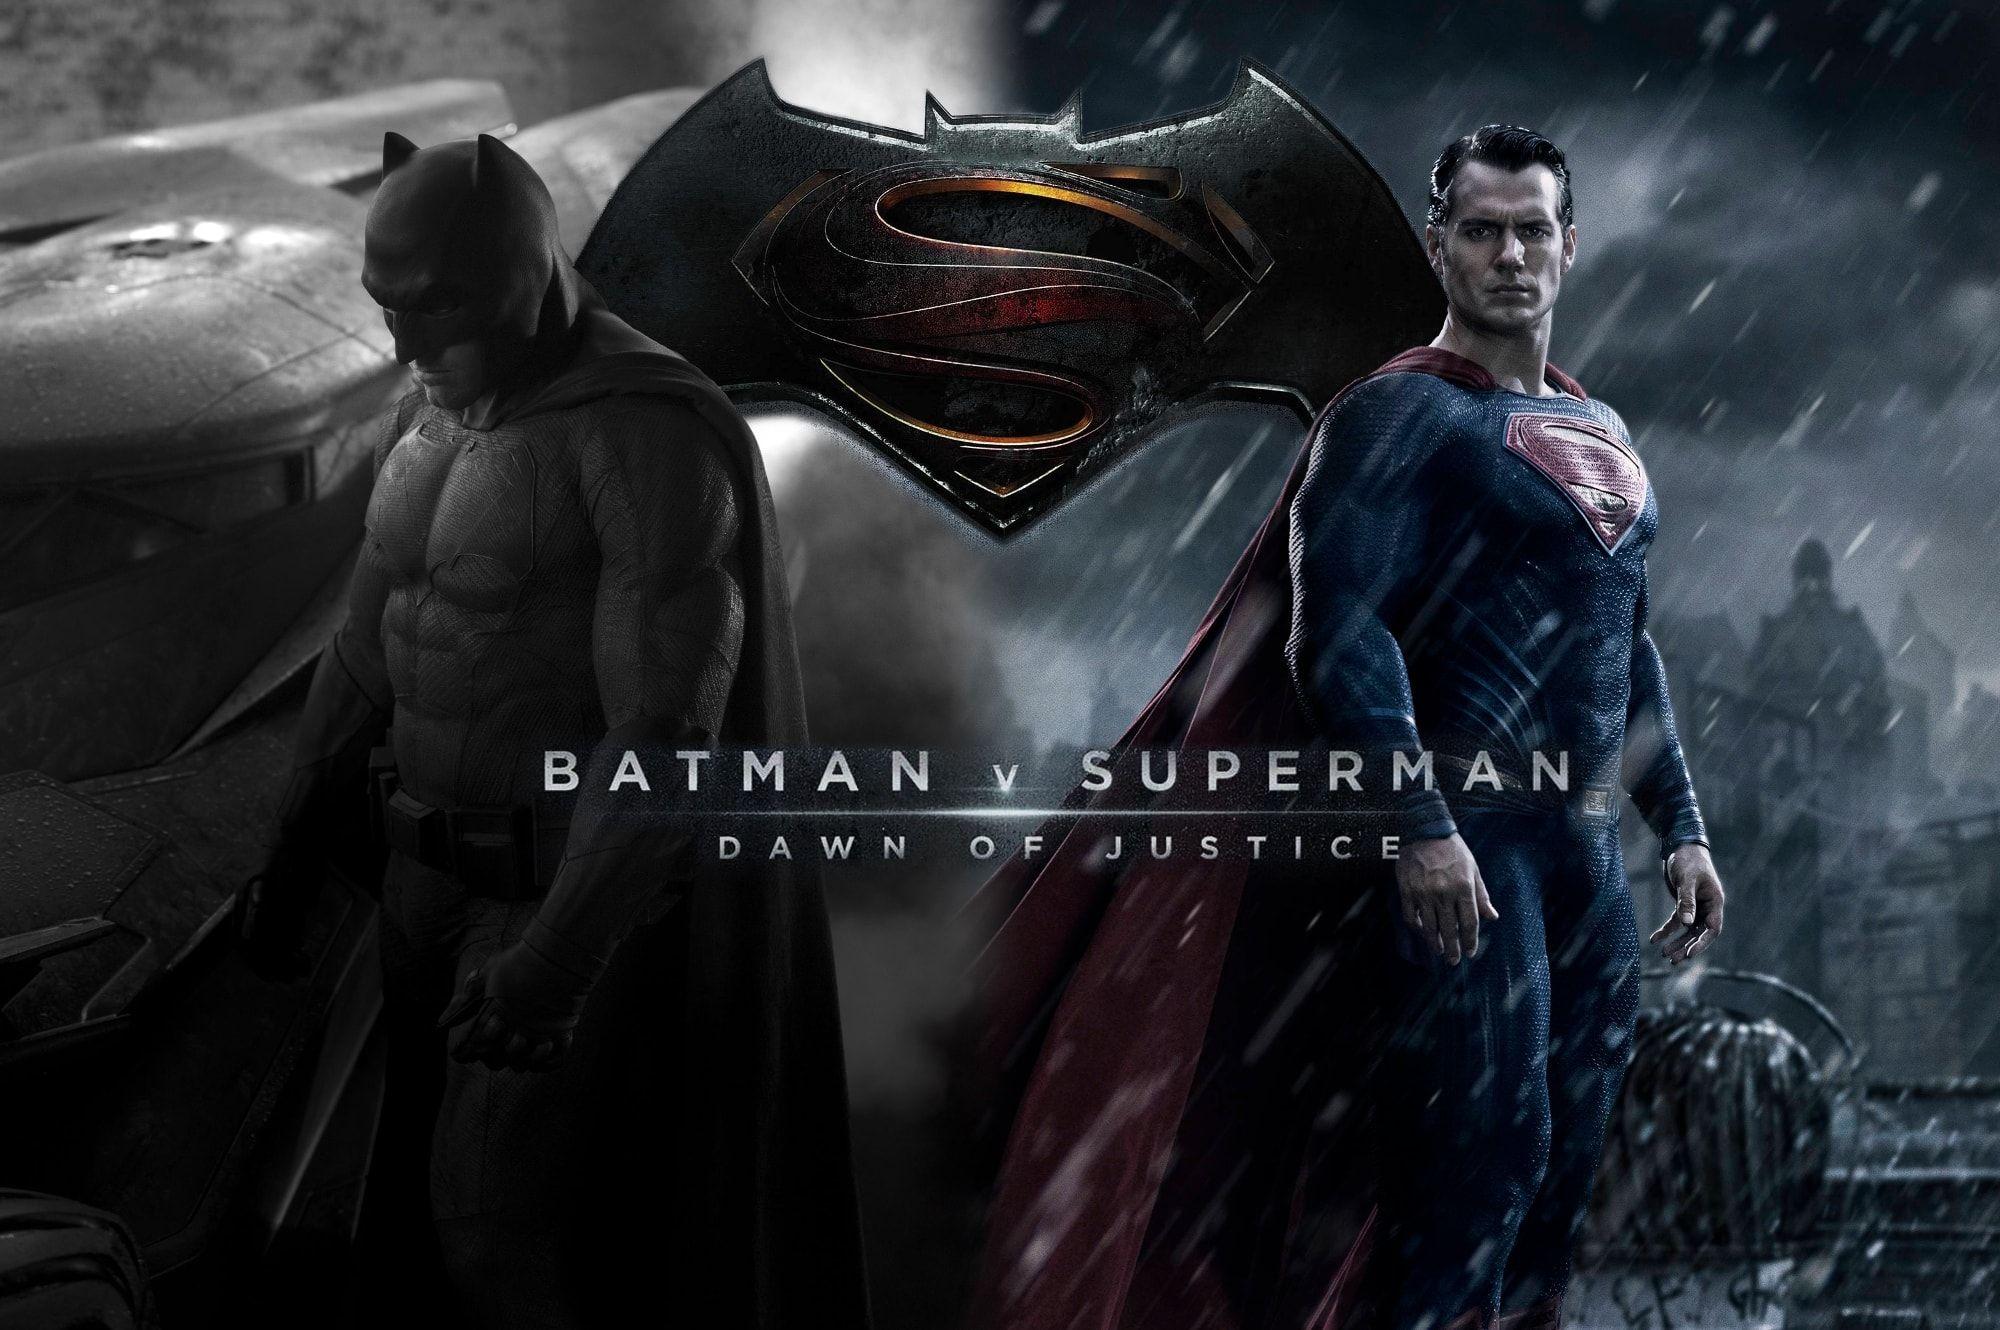 Batman vs Superman: Dawn of Justice 2016 full Movie Download in HD - Filmyzilla